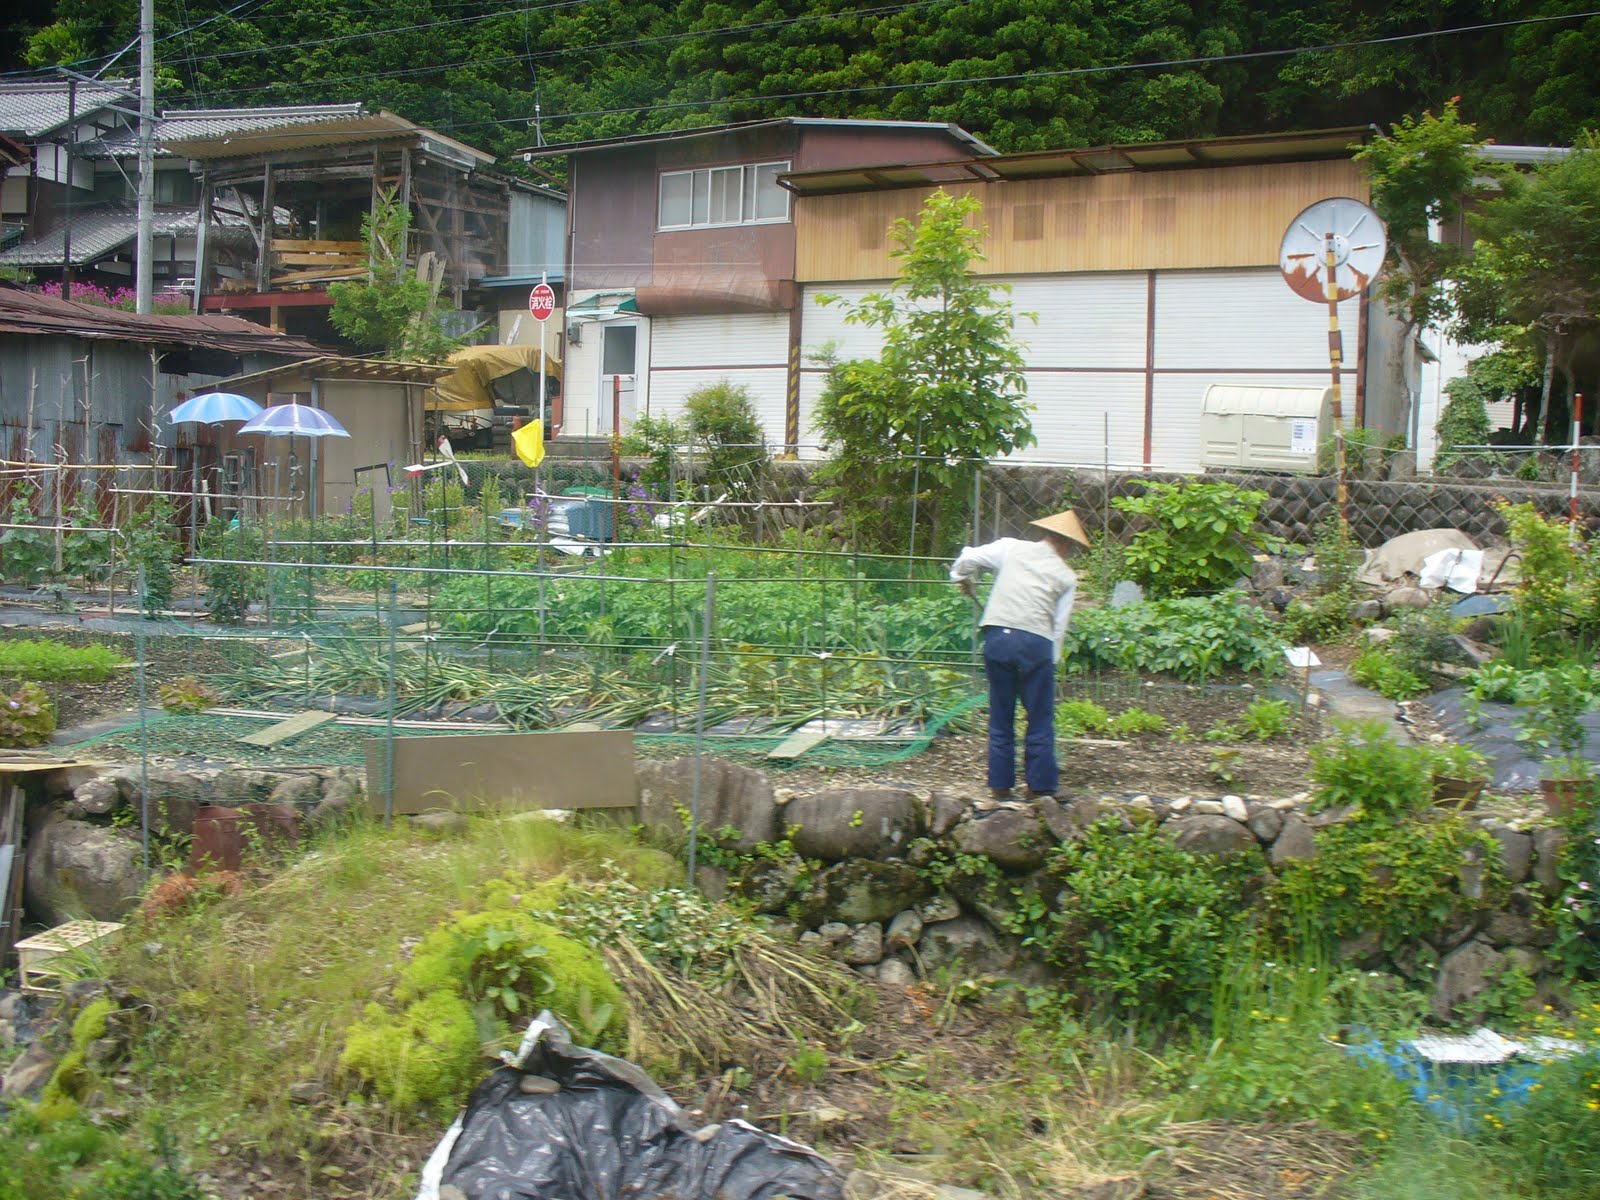 Japanese Vegetable Gardens Bing Images Vegetable Garden Design